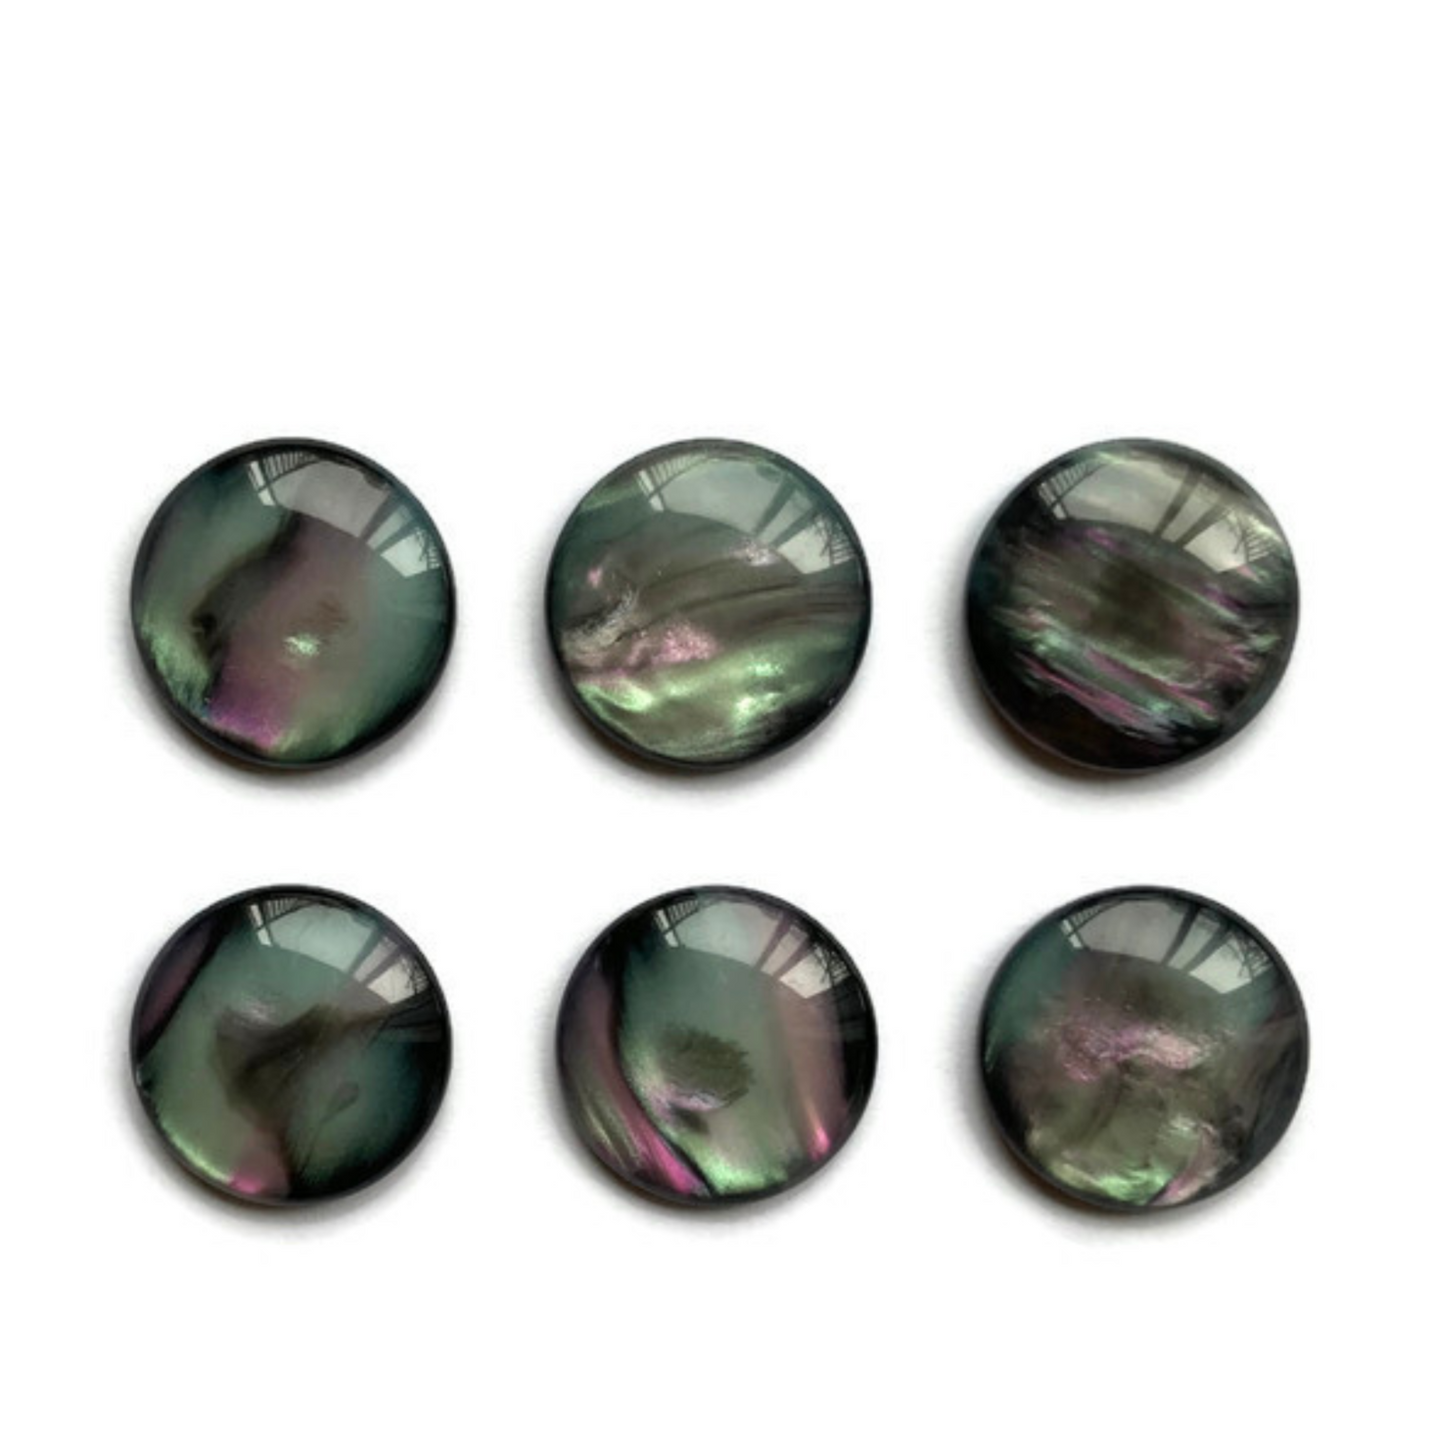 Black Marbled Magnets